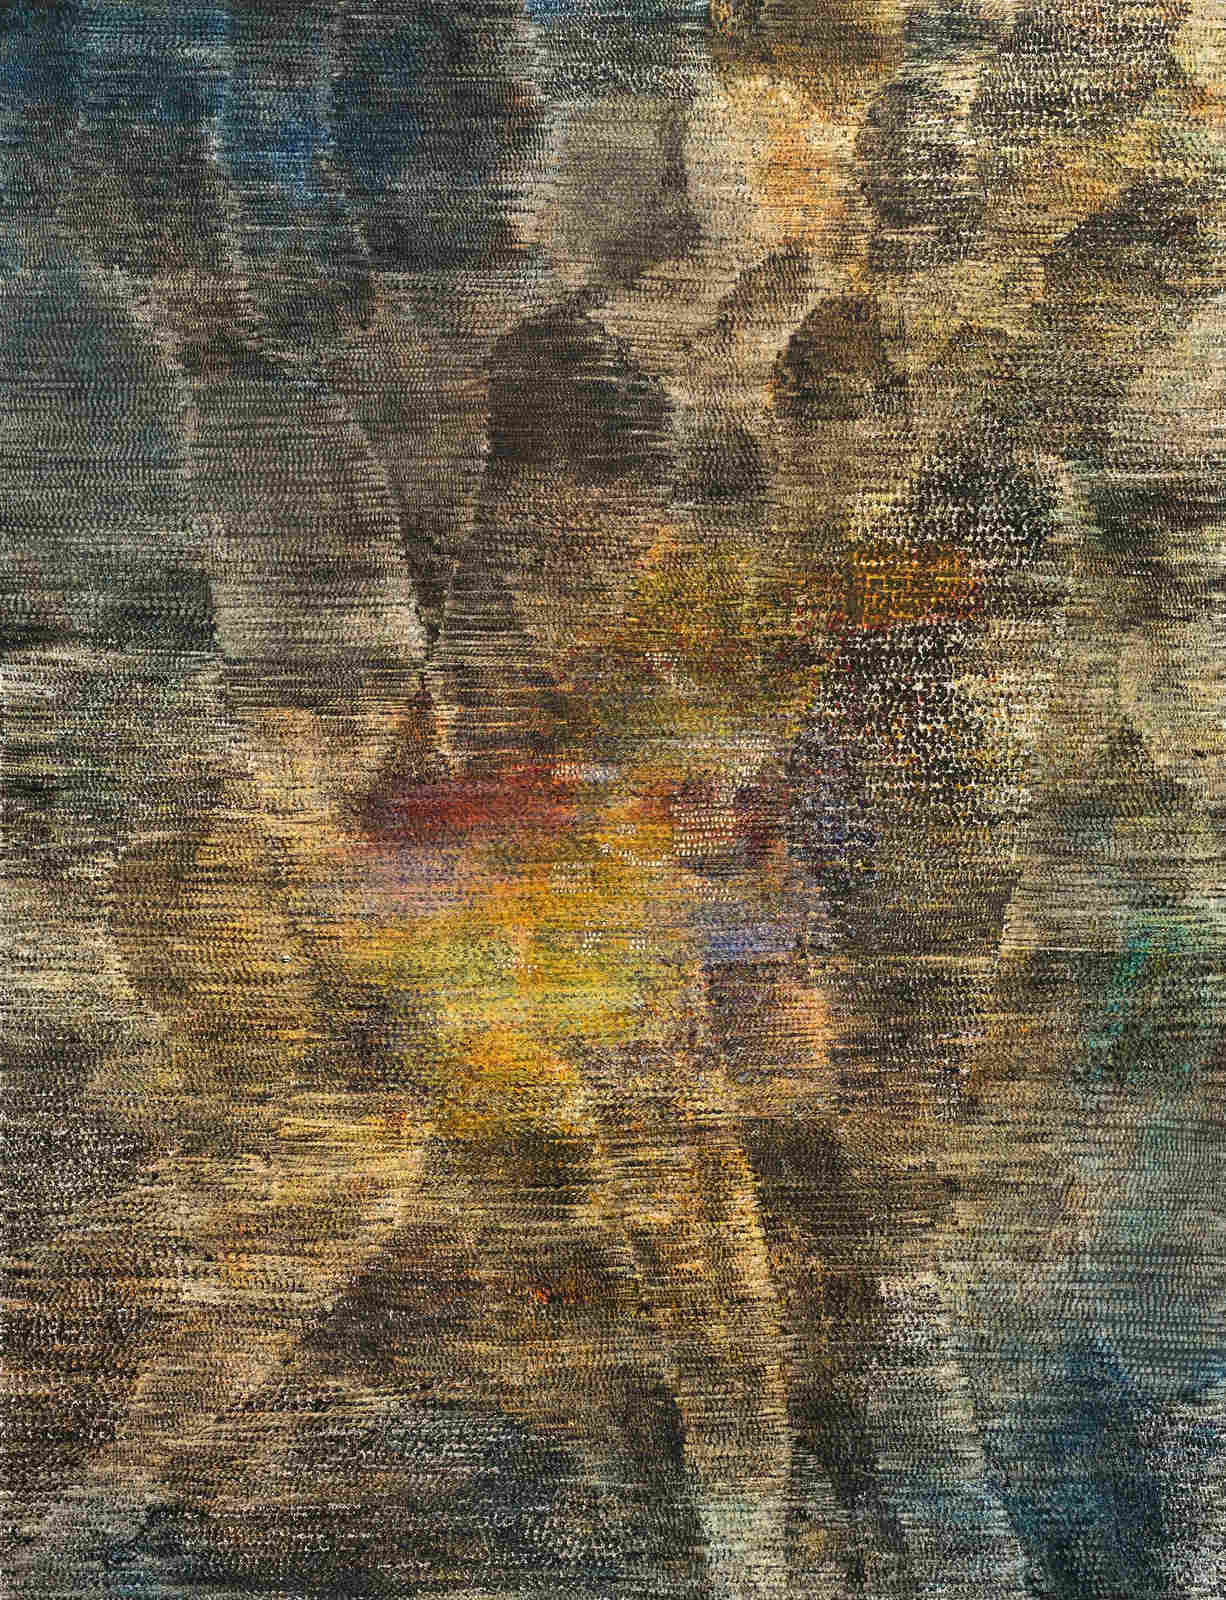 19_Guggisberg, Stefan_Wärme_2015_oil on paper_65 x 50 cm